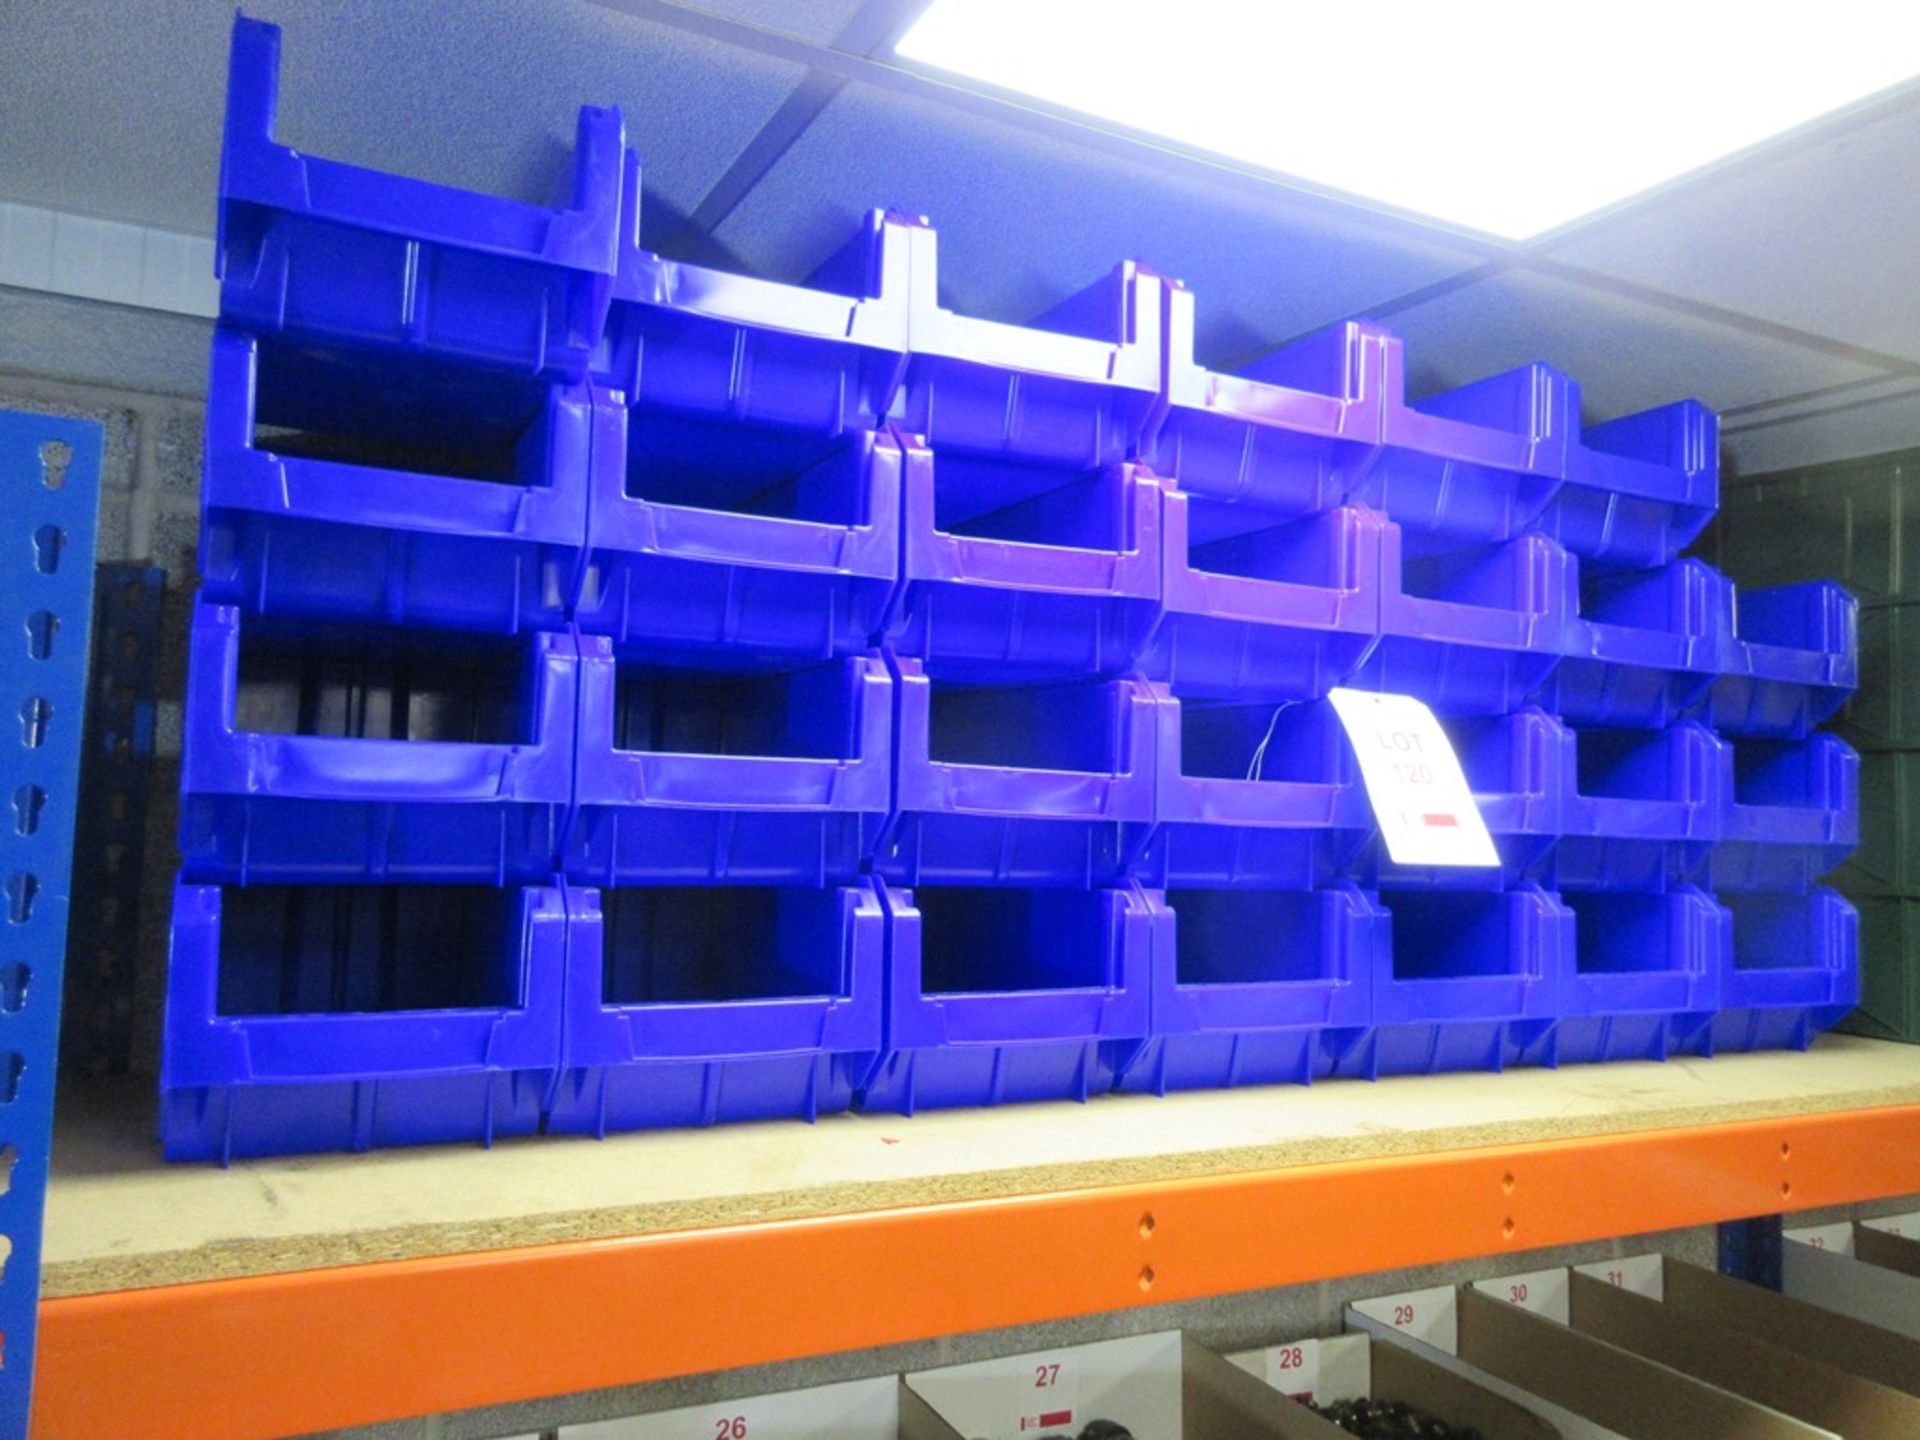 Twenty-seven Blue storage bins